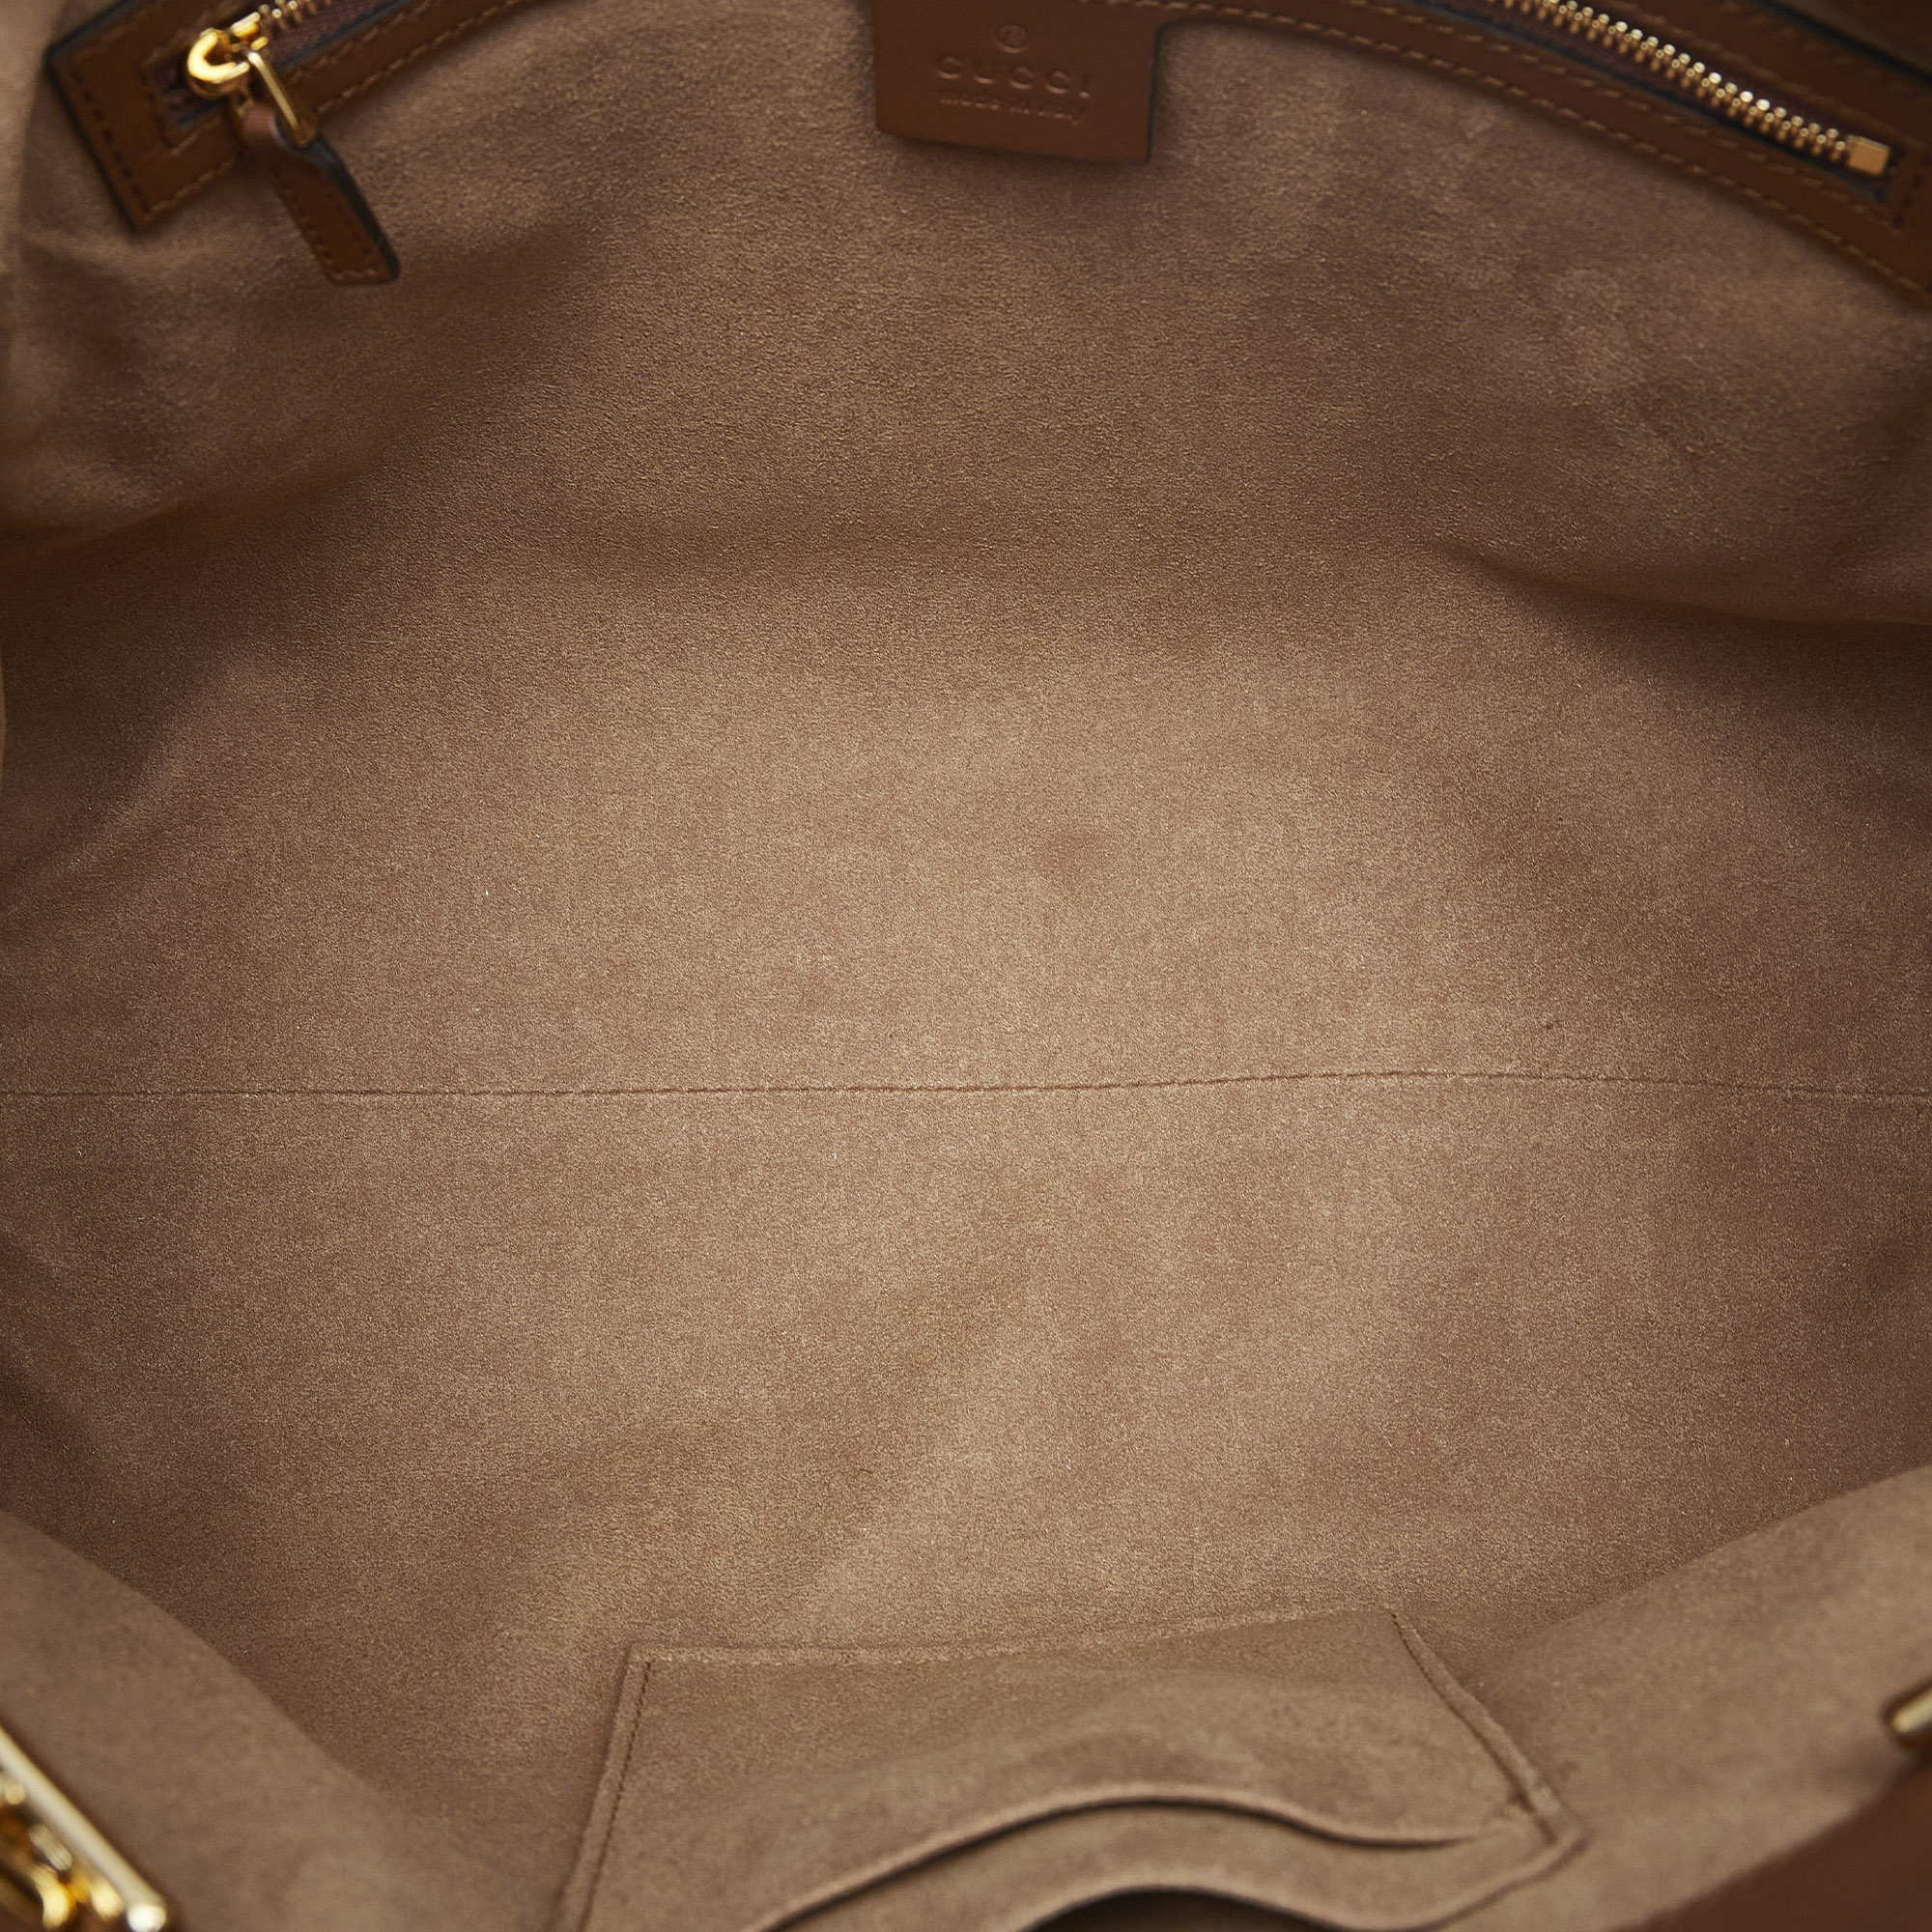 Gucci Beige/Brown Medium GG Supreme Padlock Tote Bag